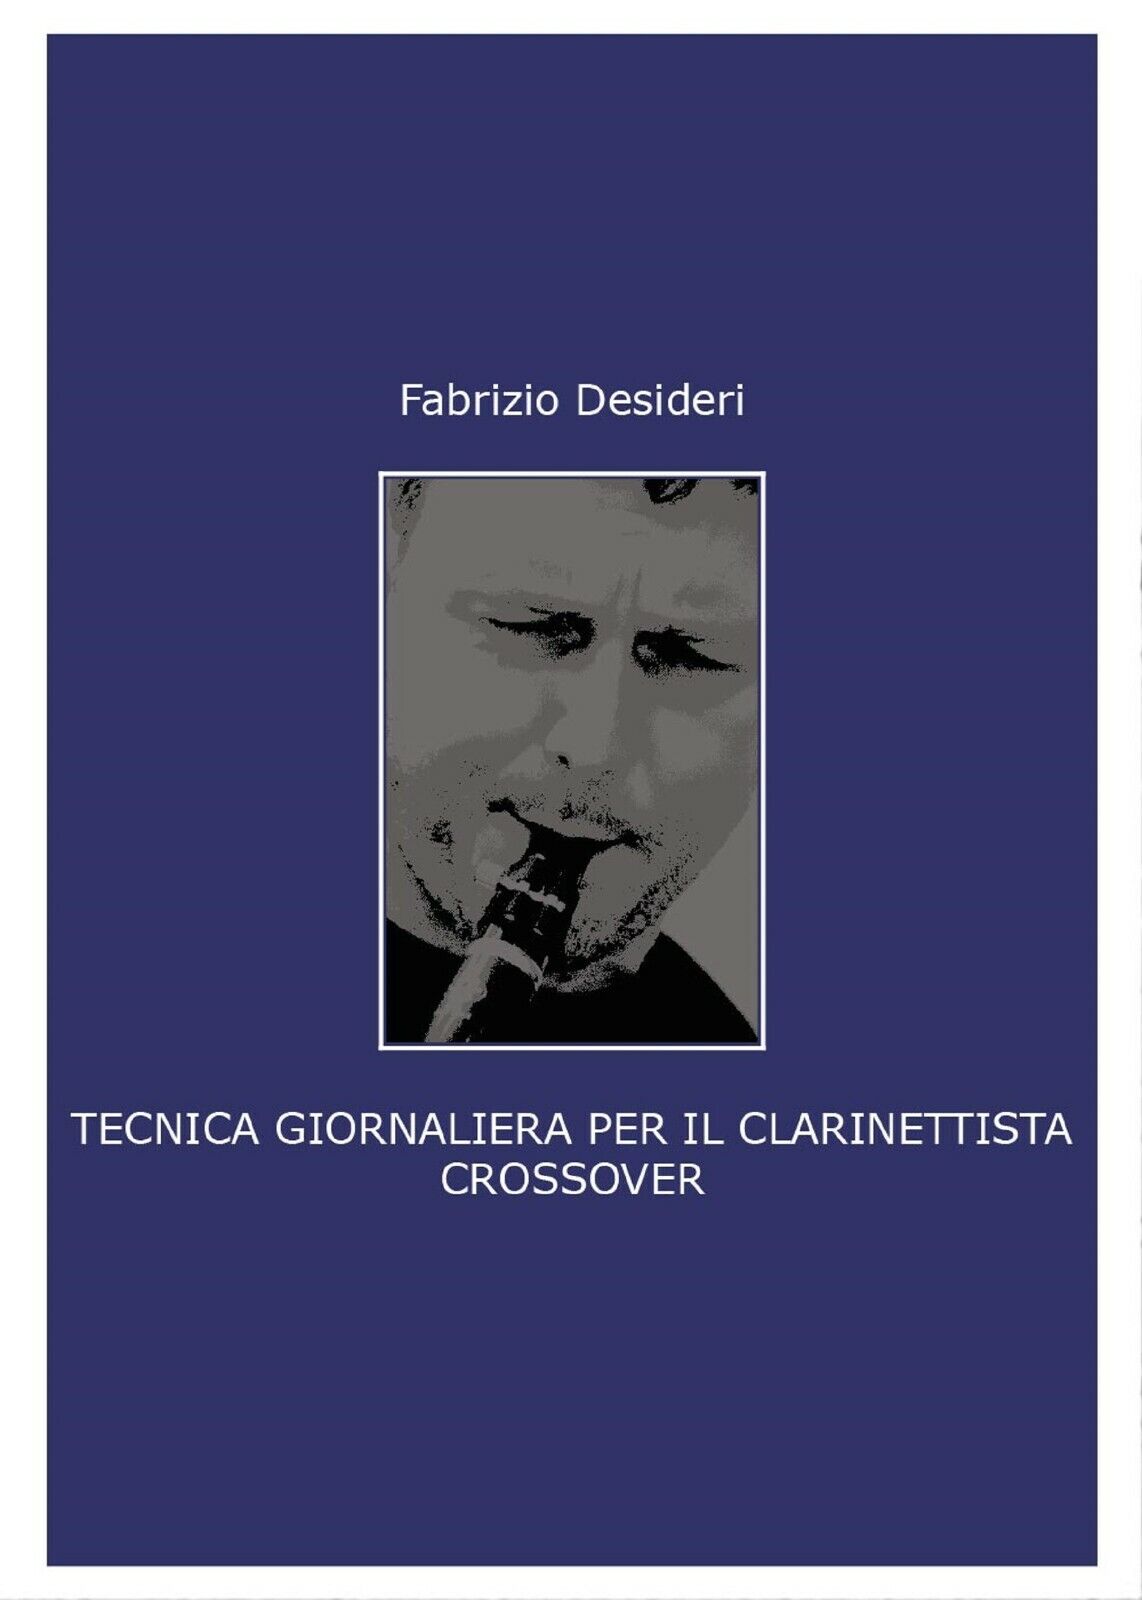 Tecnica giornaliera per il clarinettista crossover di Fabrizio Desideri,  2017, 